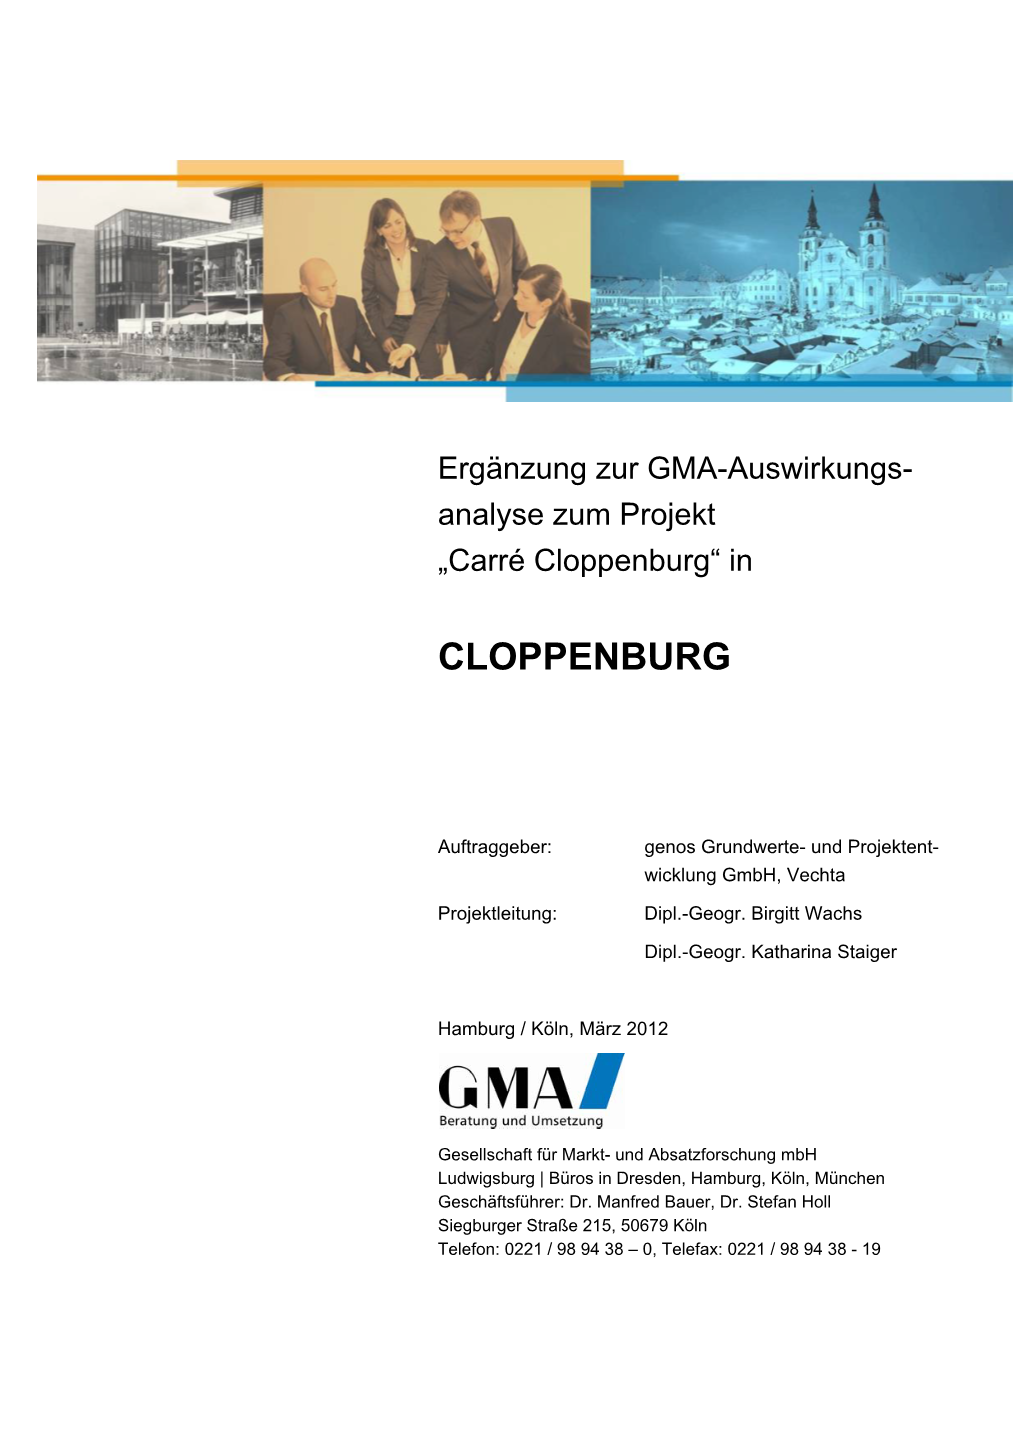 Ergänzung Zur GMA-Auswirkungs- Analyse Zum Projekt „Carré Cloppenburg“ In